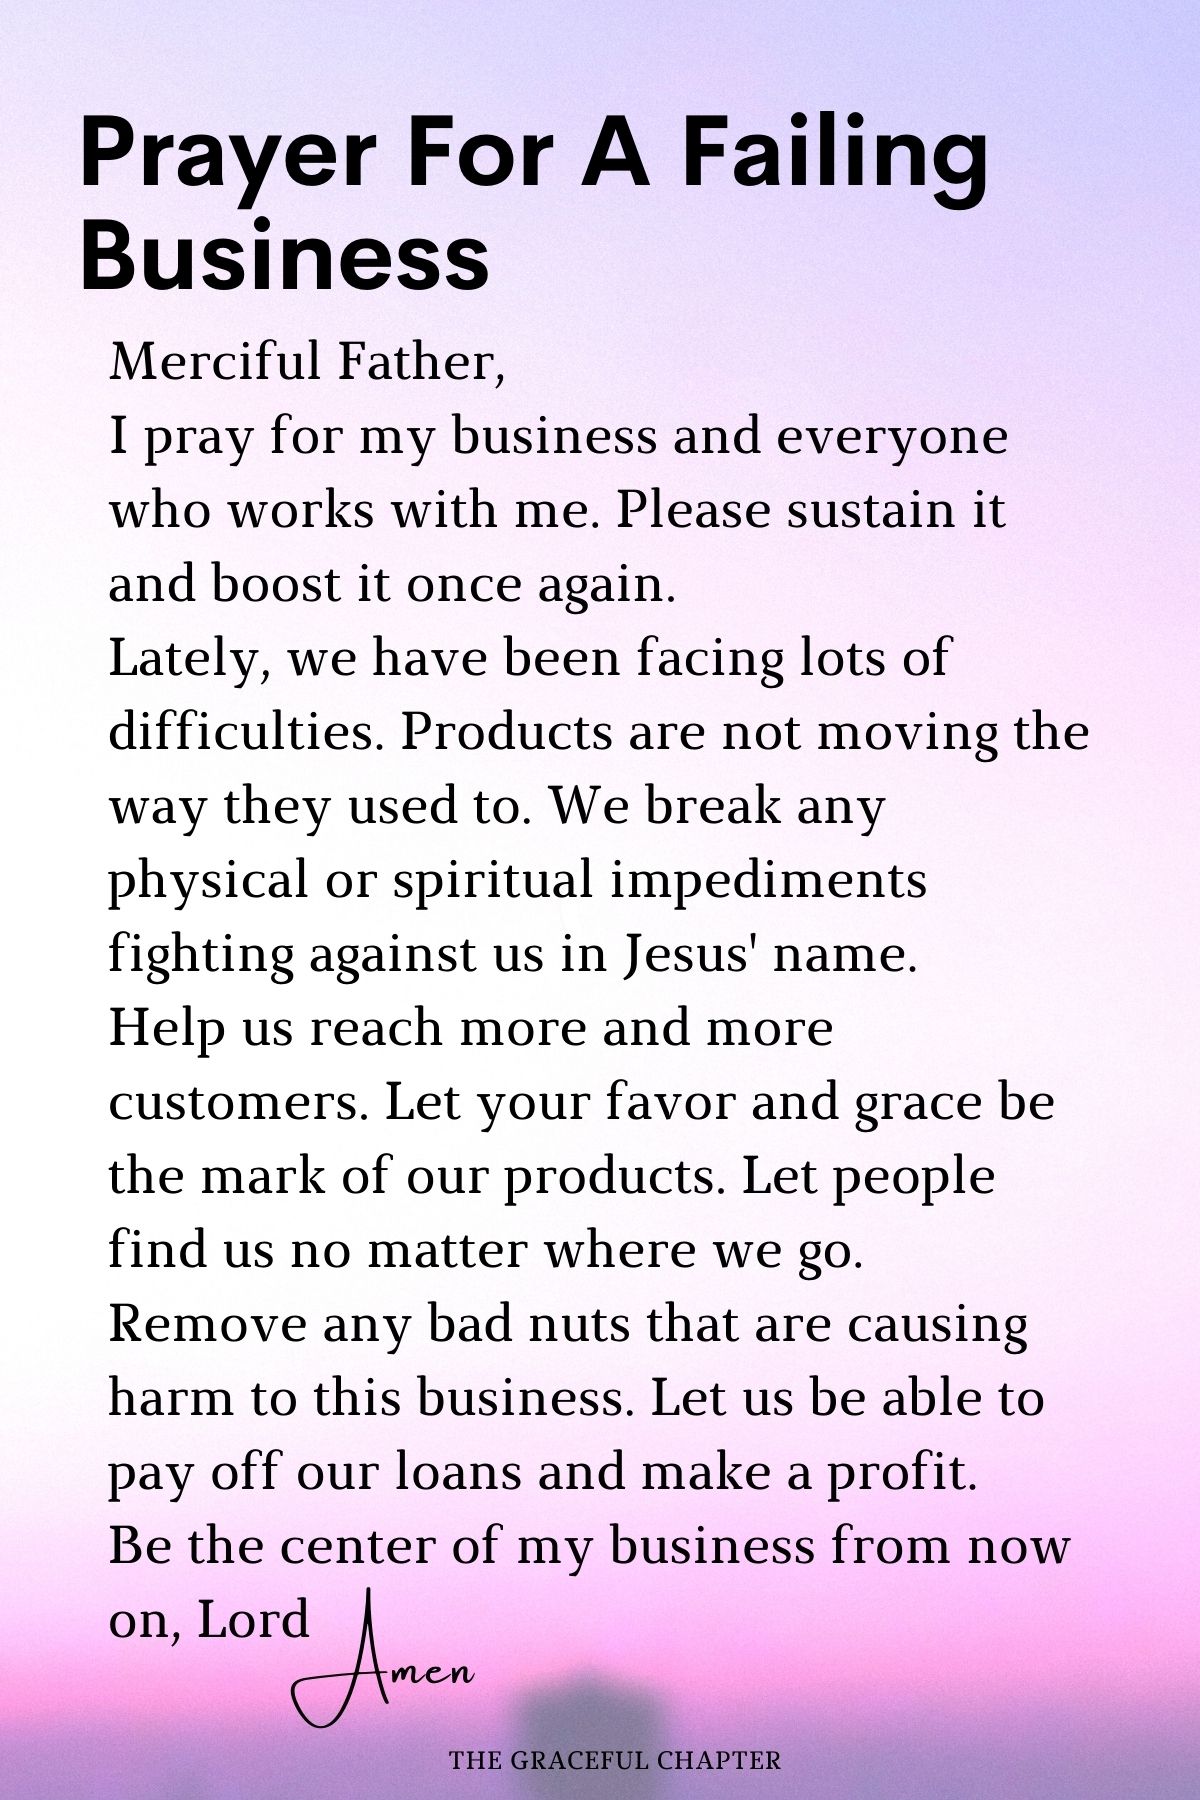 Prayer for a failing business